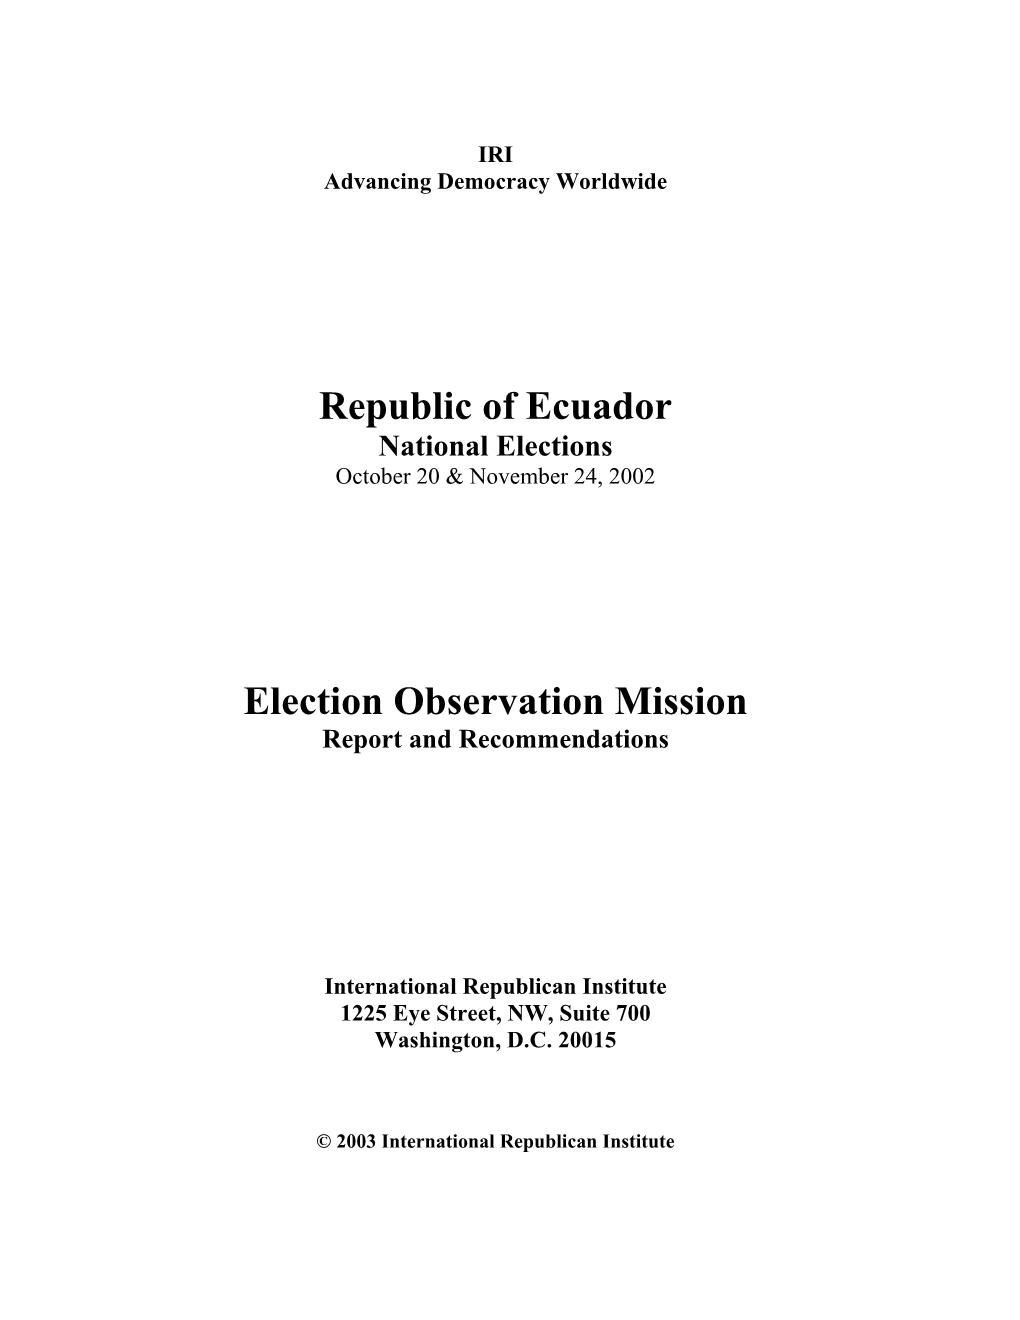 Ecuador's 2002 Presidential Elections